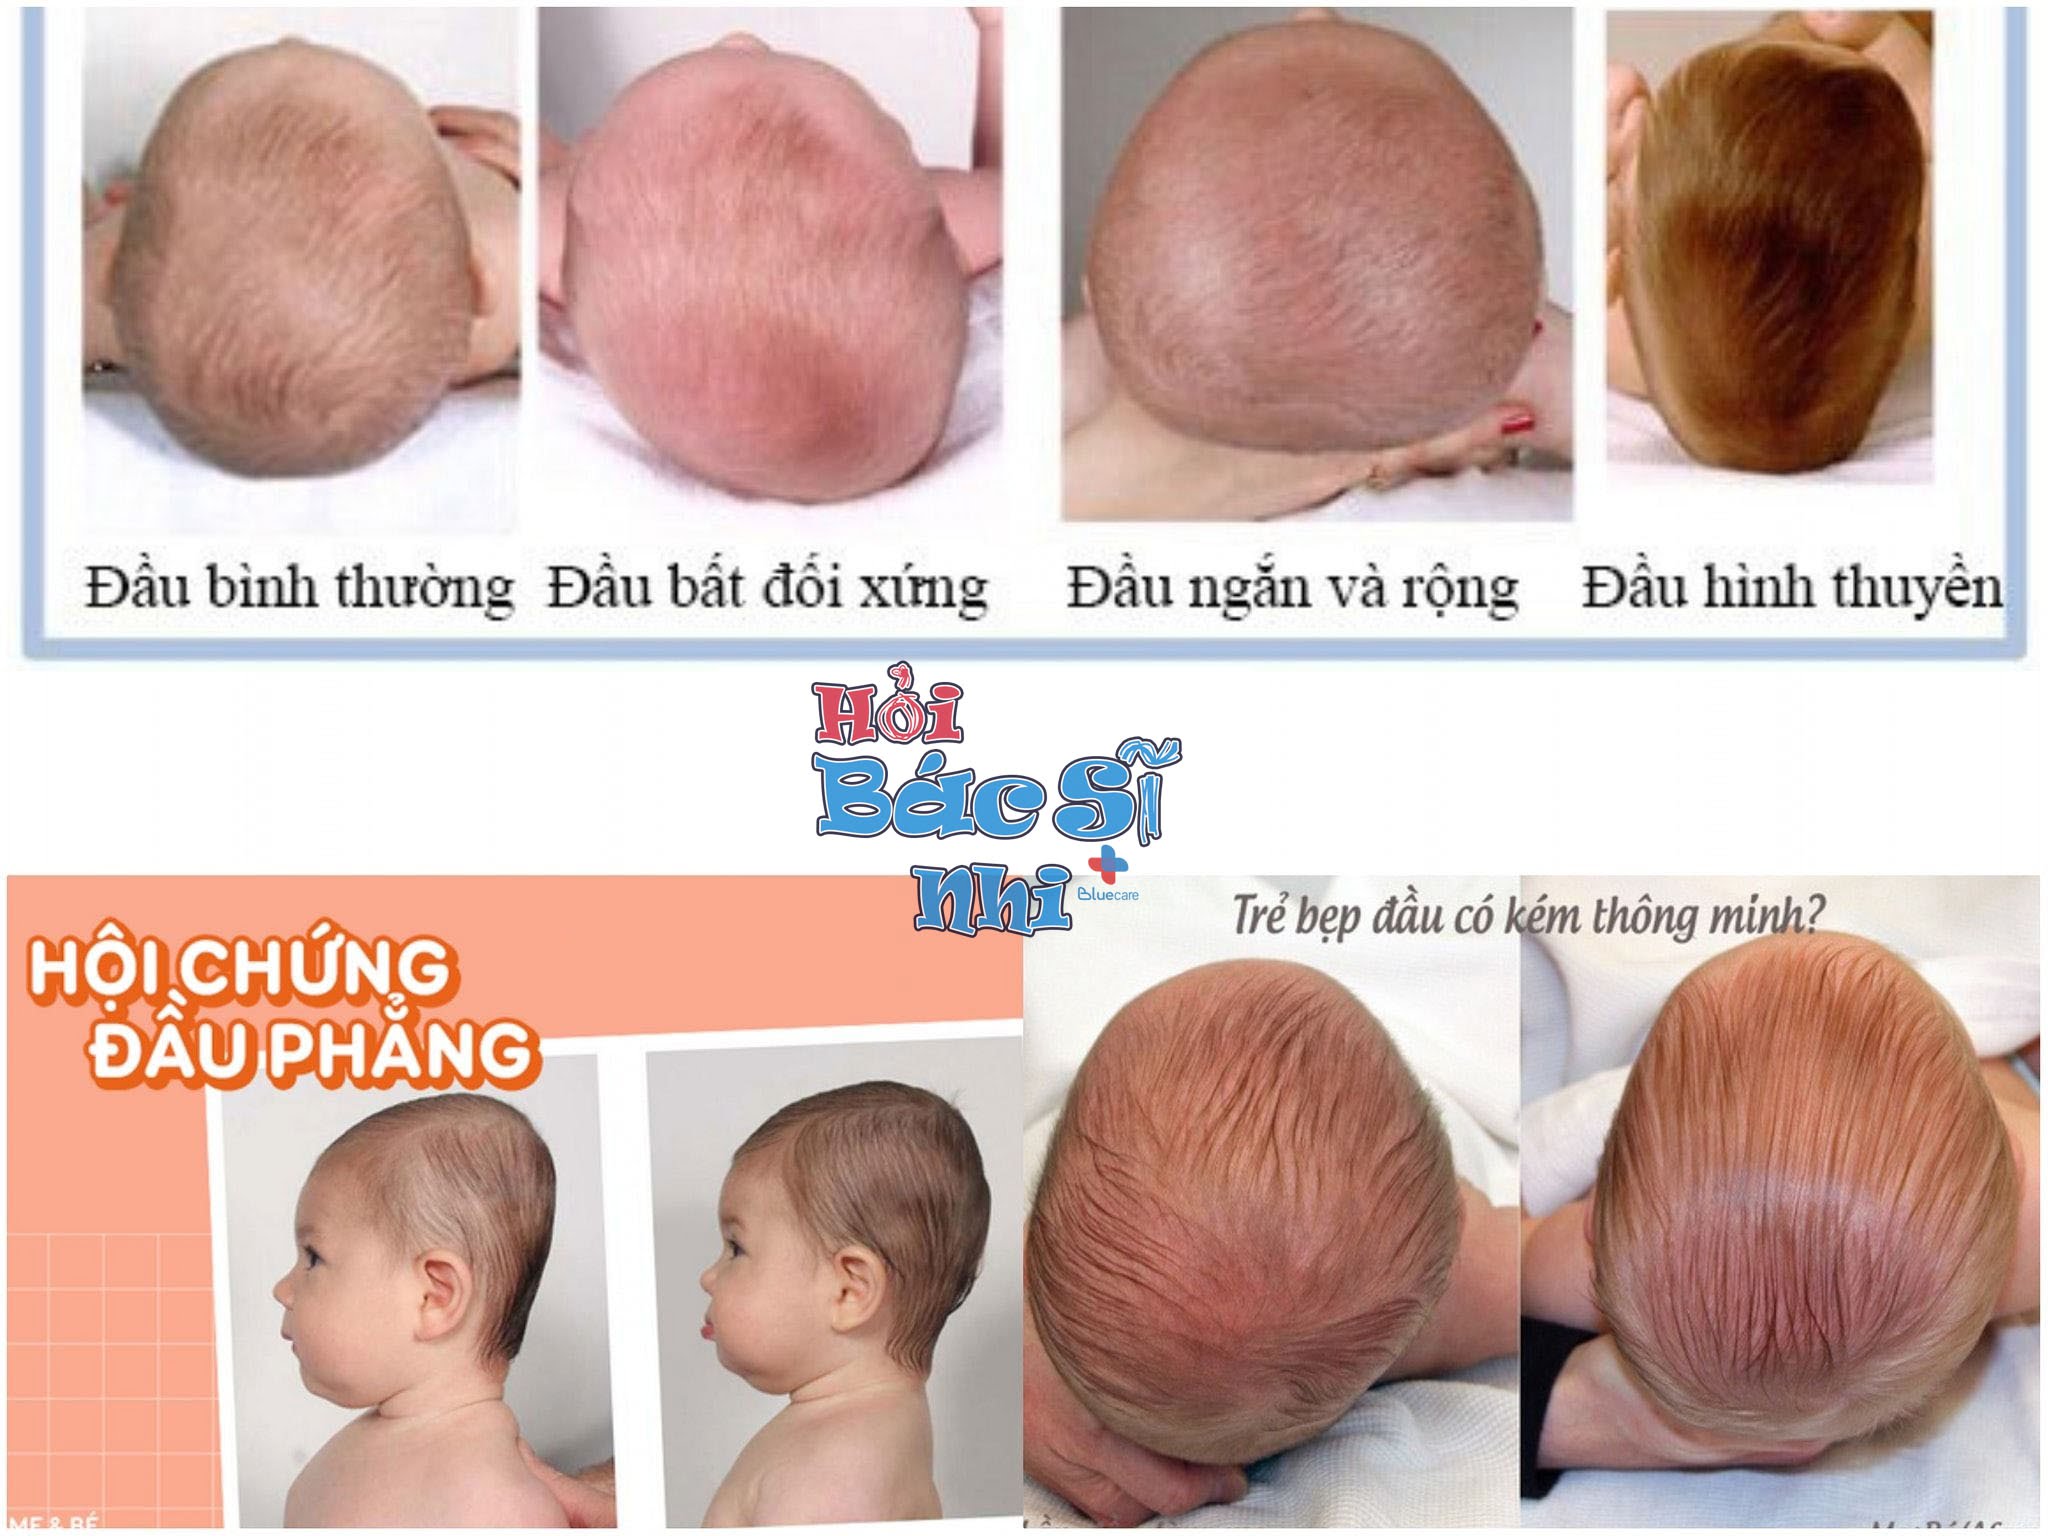 TRẺ SƠ SINH BỊ BẸP ĐẦU - kiểu tóc cho bé trai đầu bẹp: Nếu con bạn có chứng đầu bẹp ở trẻ sơ sinh, hãy xem hình ảnh này để có thể chọn cho bé trai của mình một kiểu tóc phù hợp. Chọn kiểu tóc đầu bẹp cho bé trai sẽ giúp bé tự tin hơn và có thể giảm các tác động tiêu cực lên tâm lý của bé.